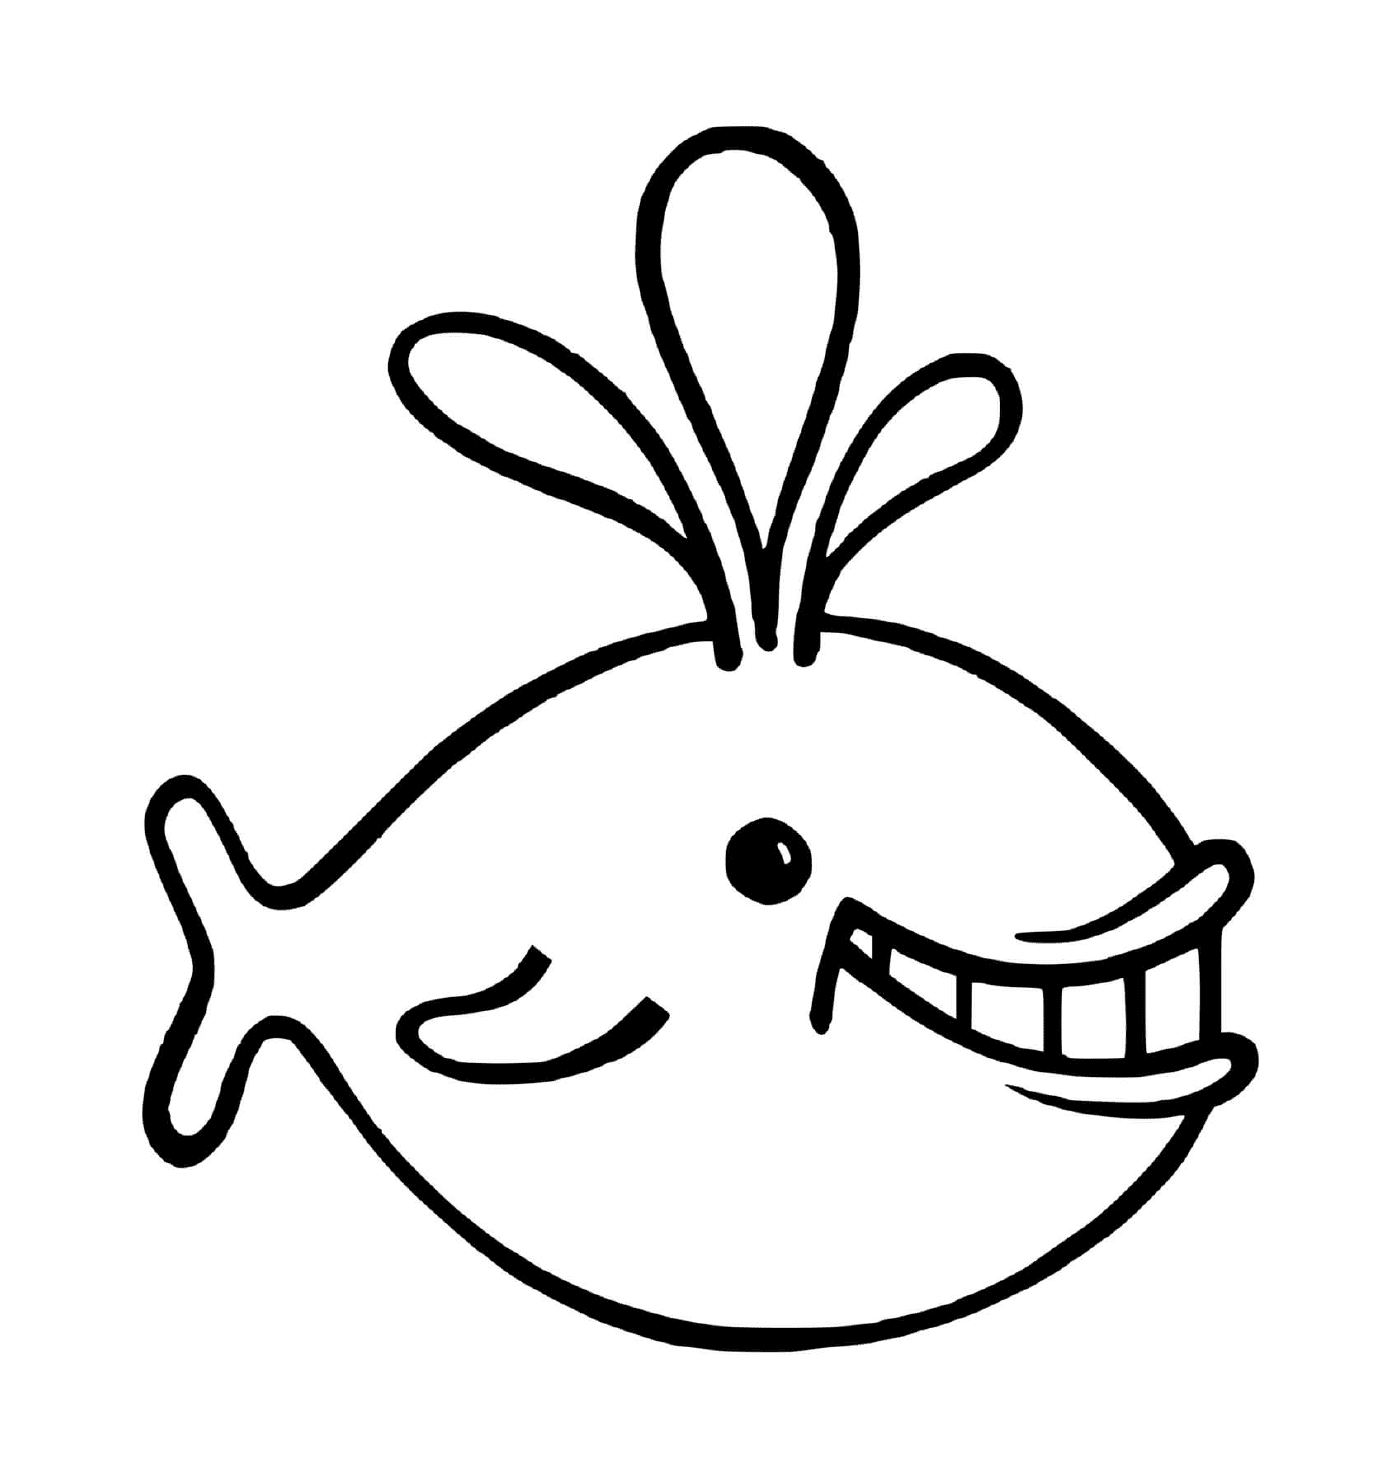  un pesce con un grande sorriso sul viso 